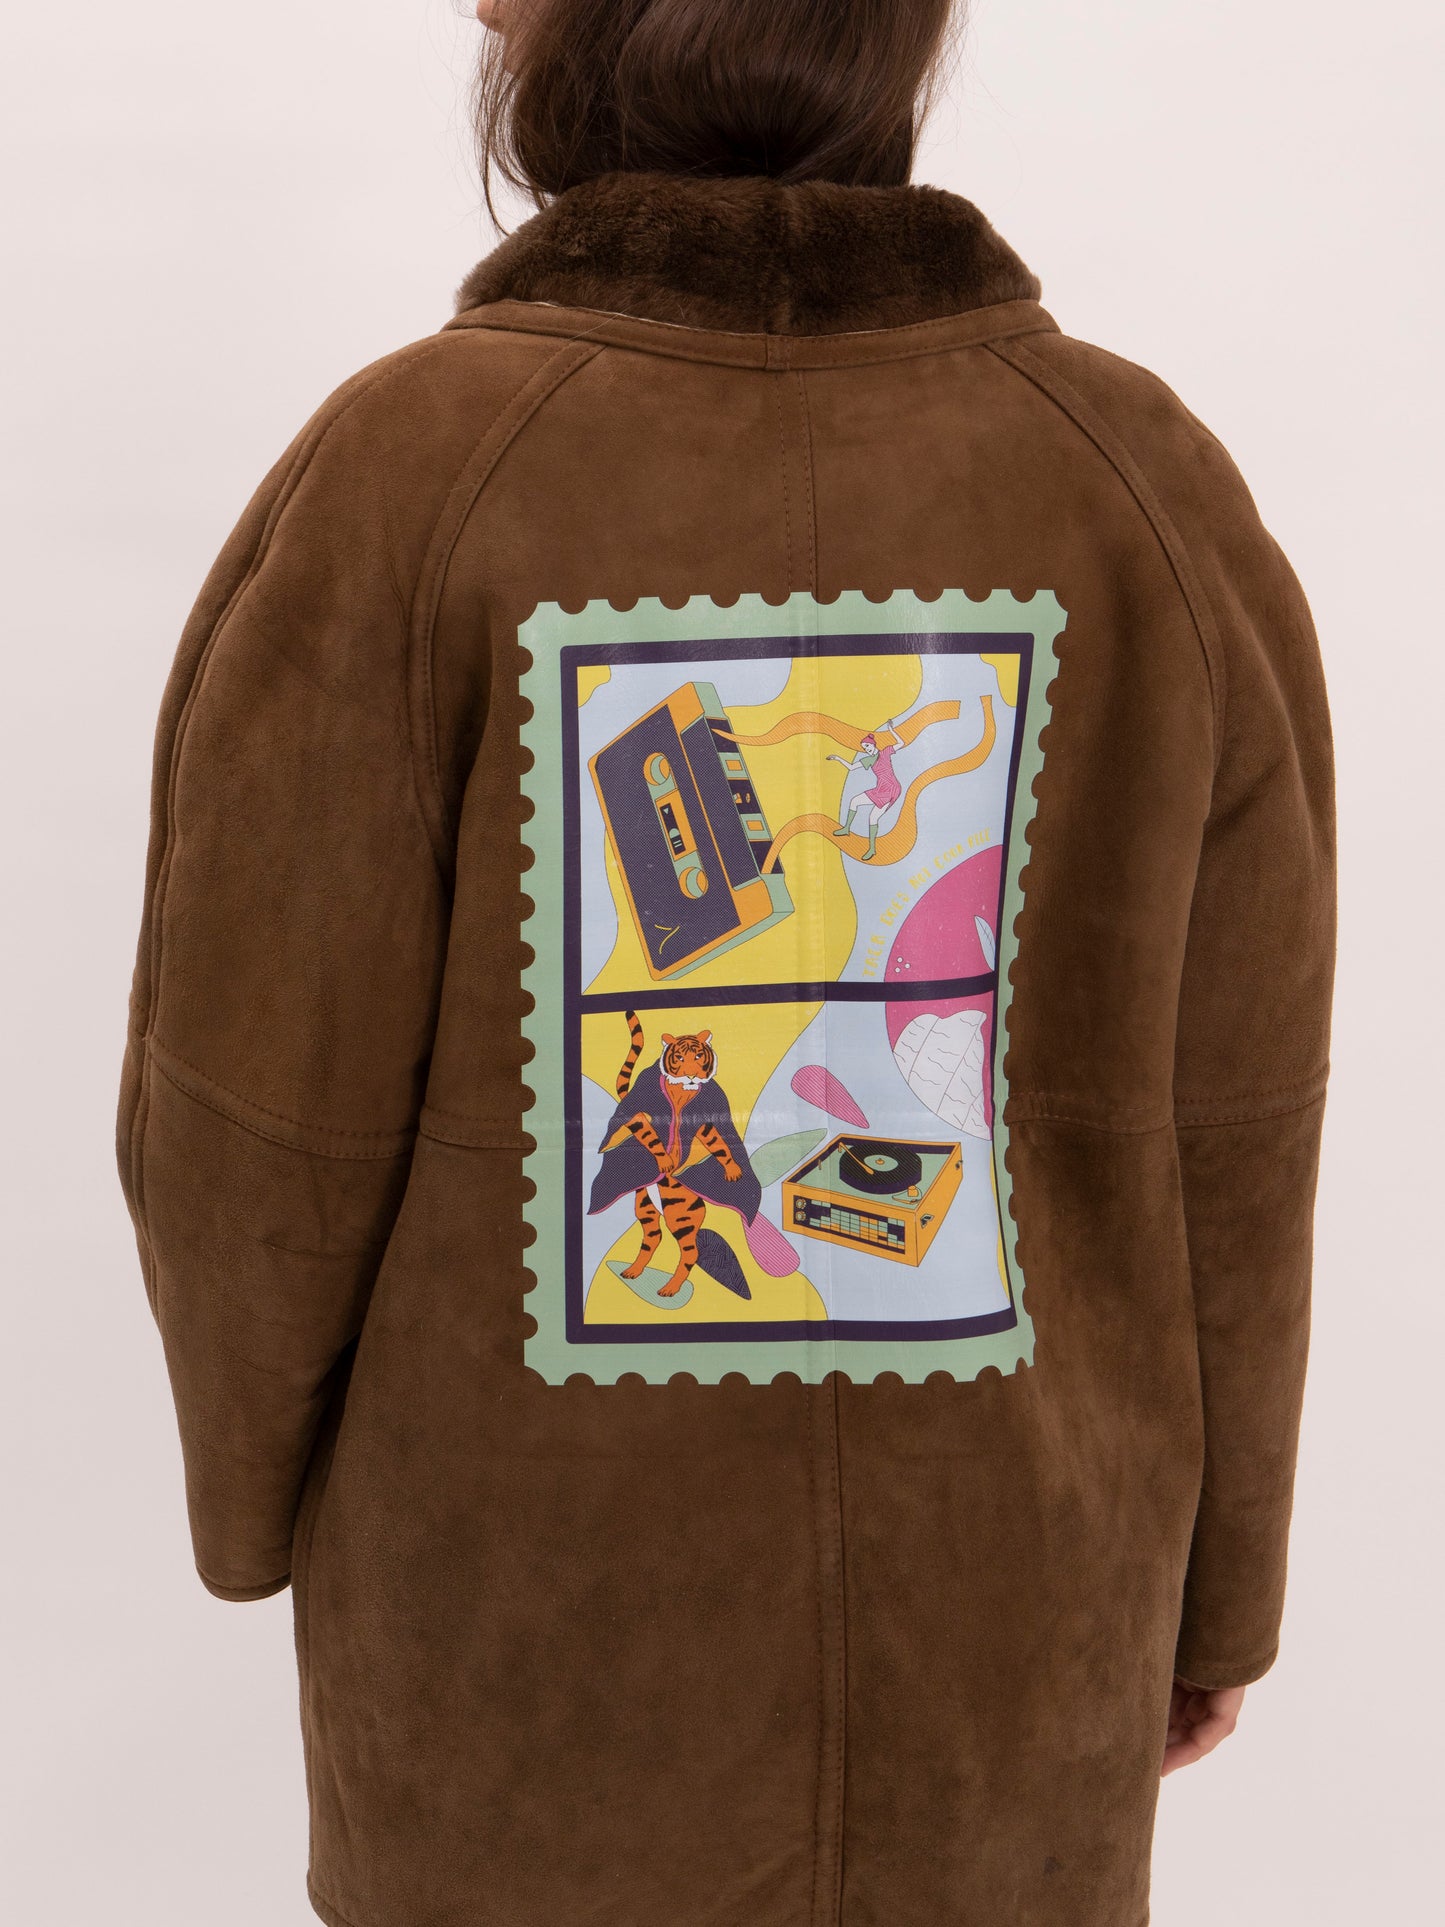 Coat, back view, vintage, printed, unique 